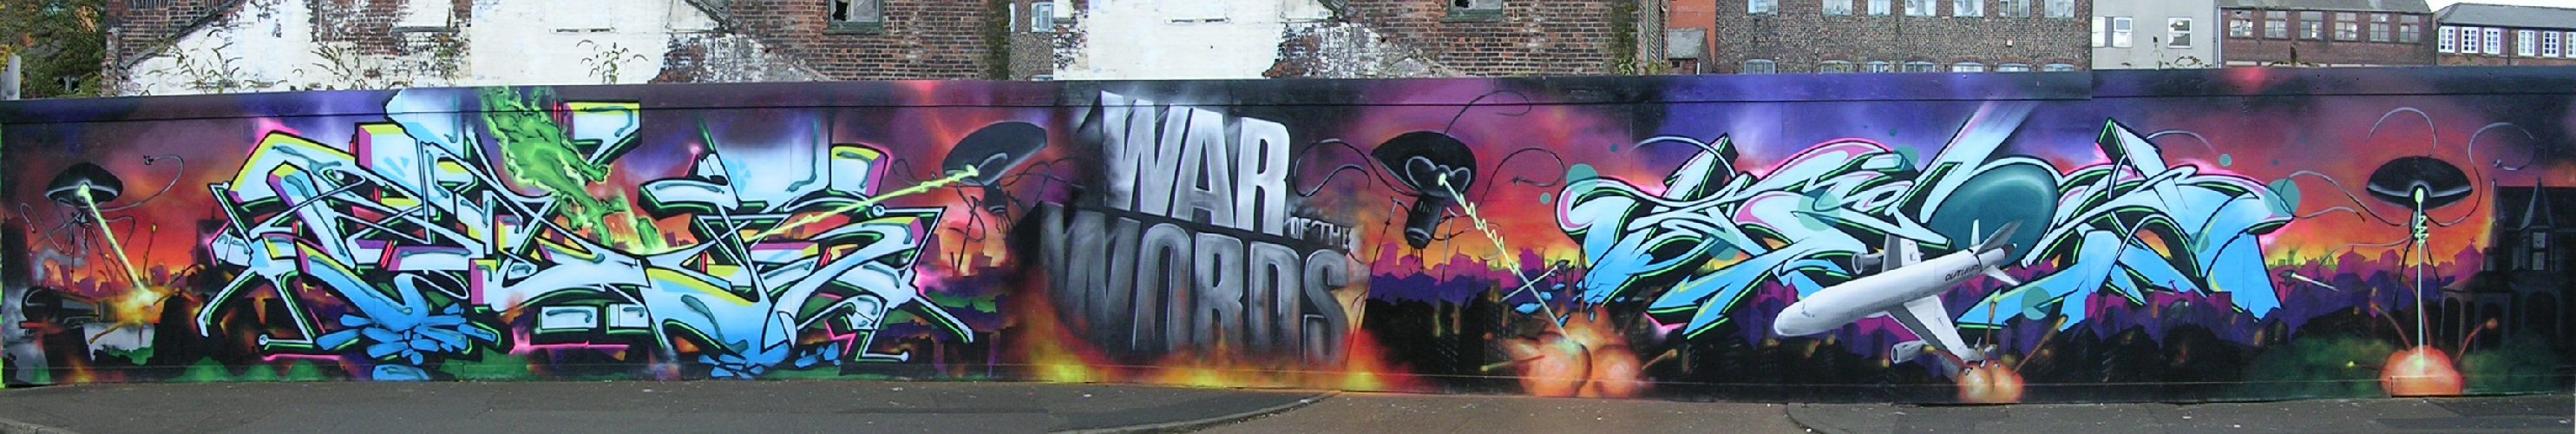 War of Words panorama 3/11/12